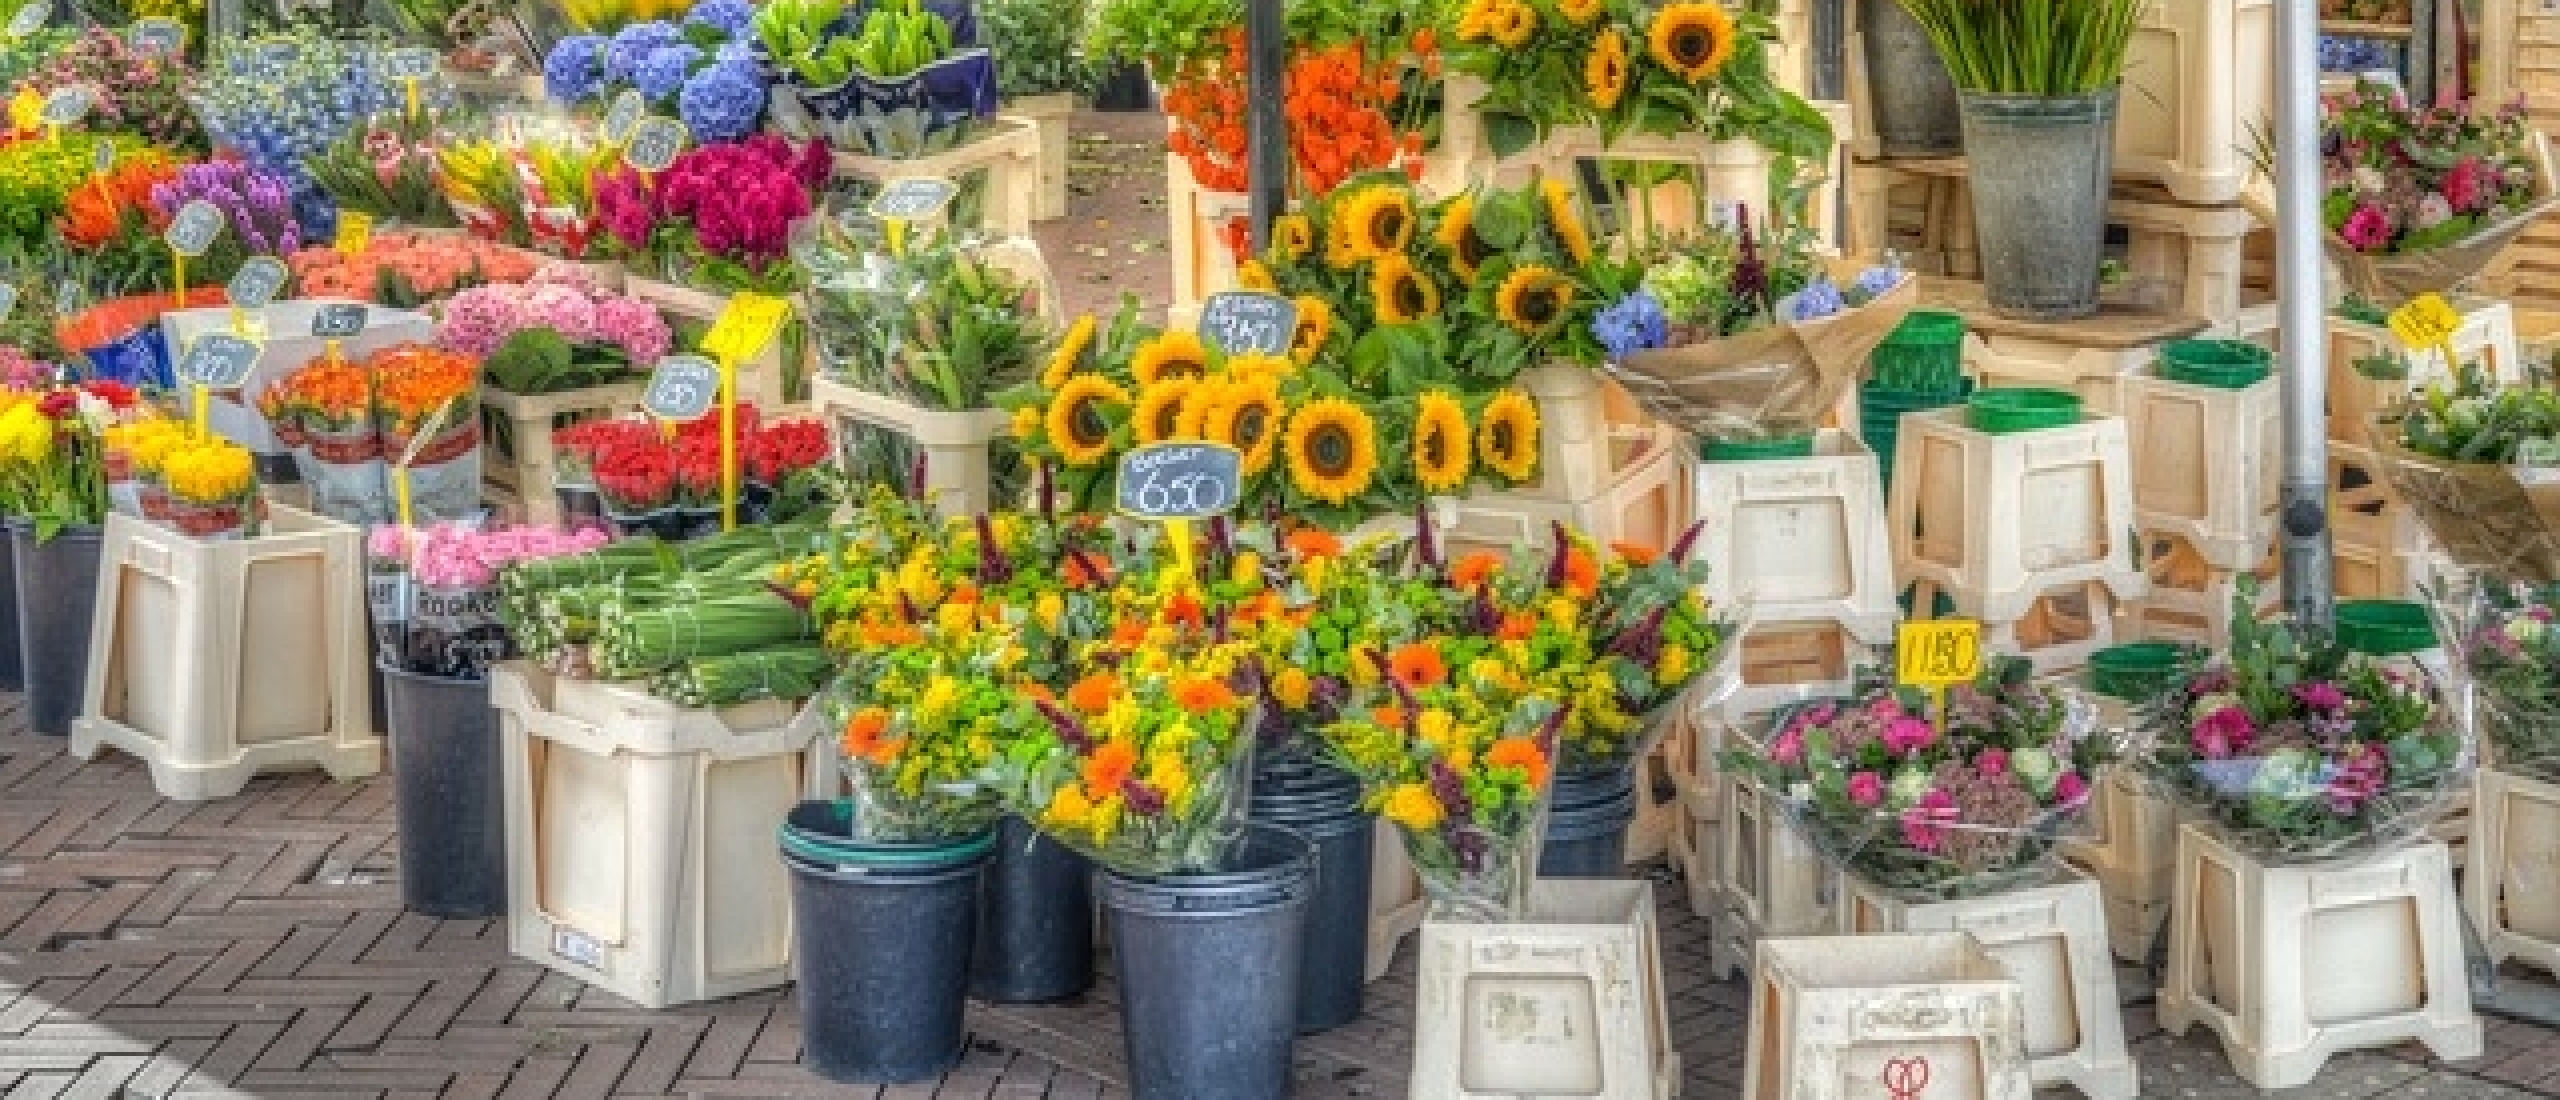 Bloemenmarkt Groningen